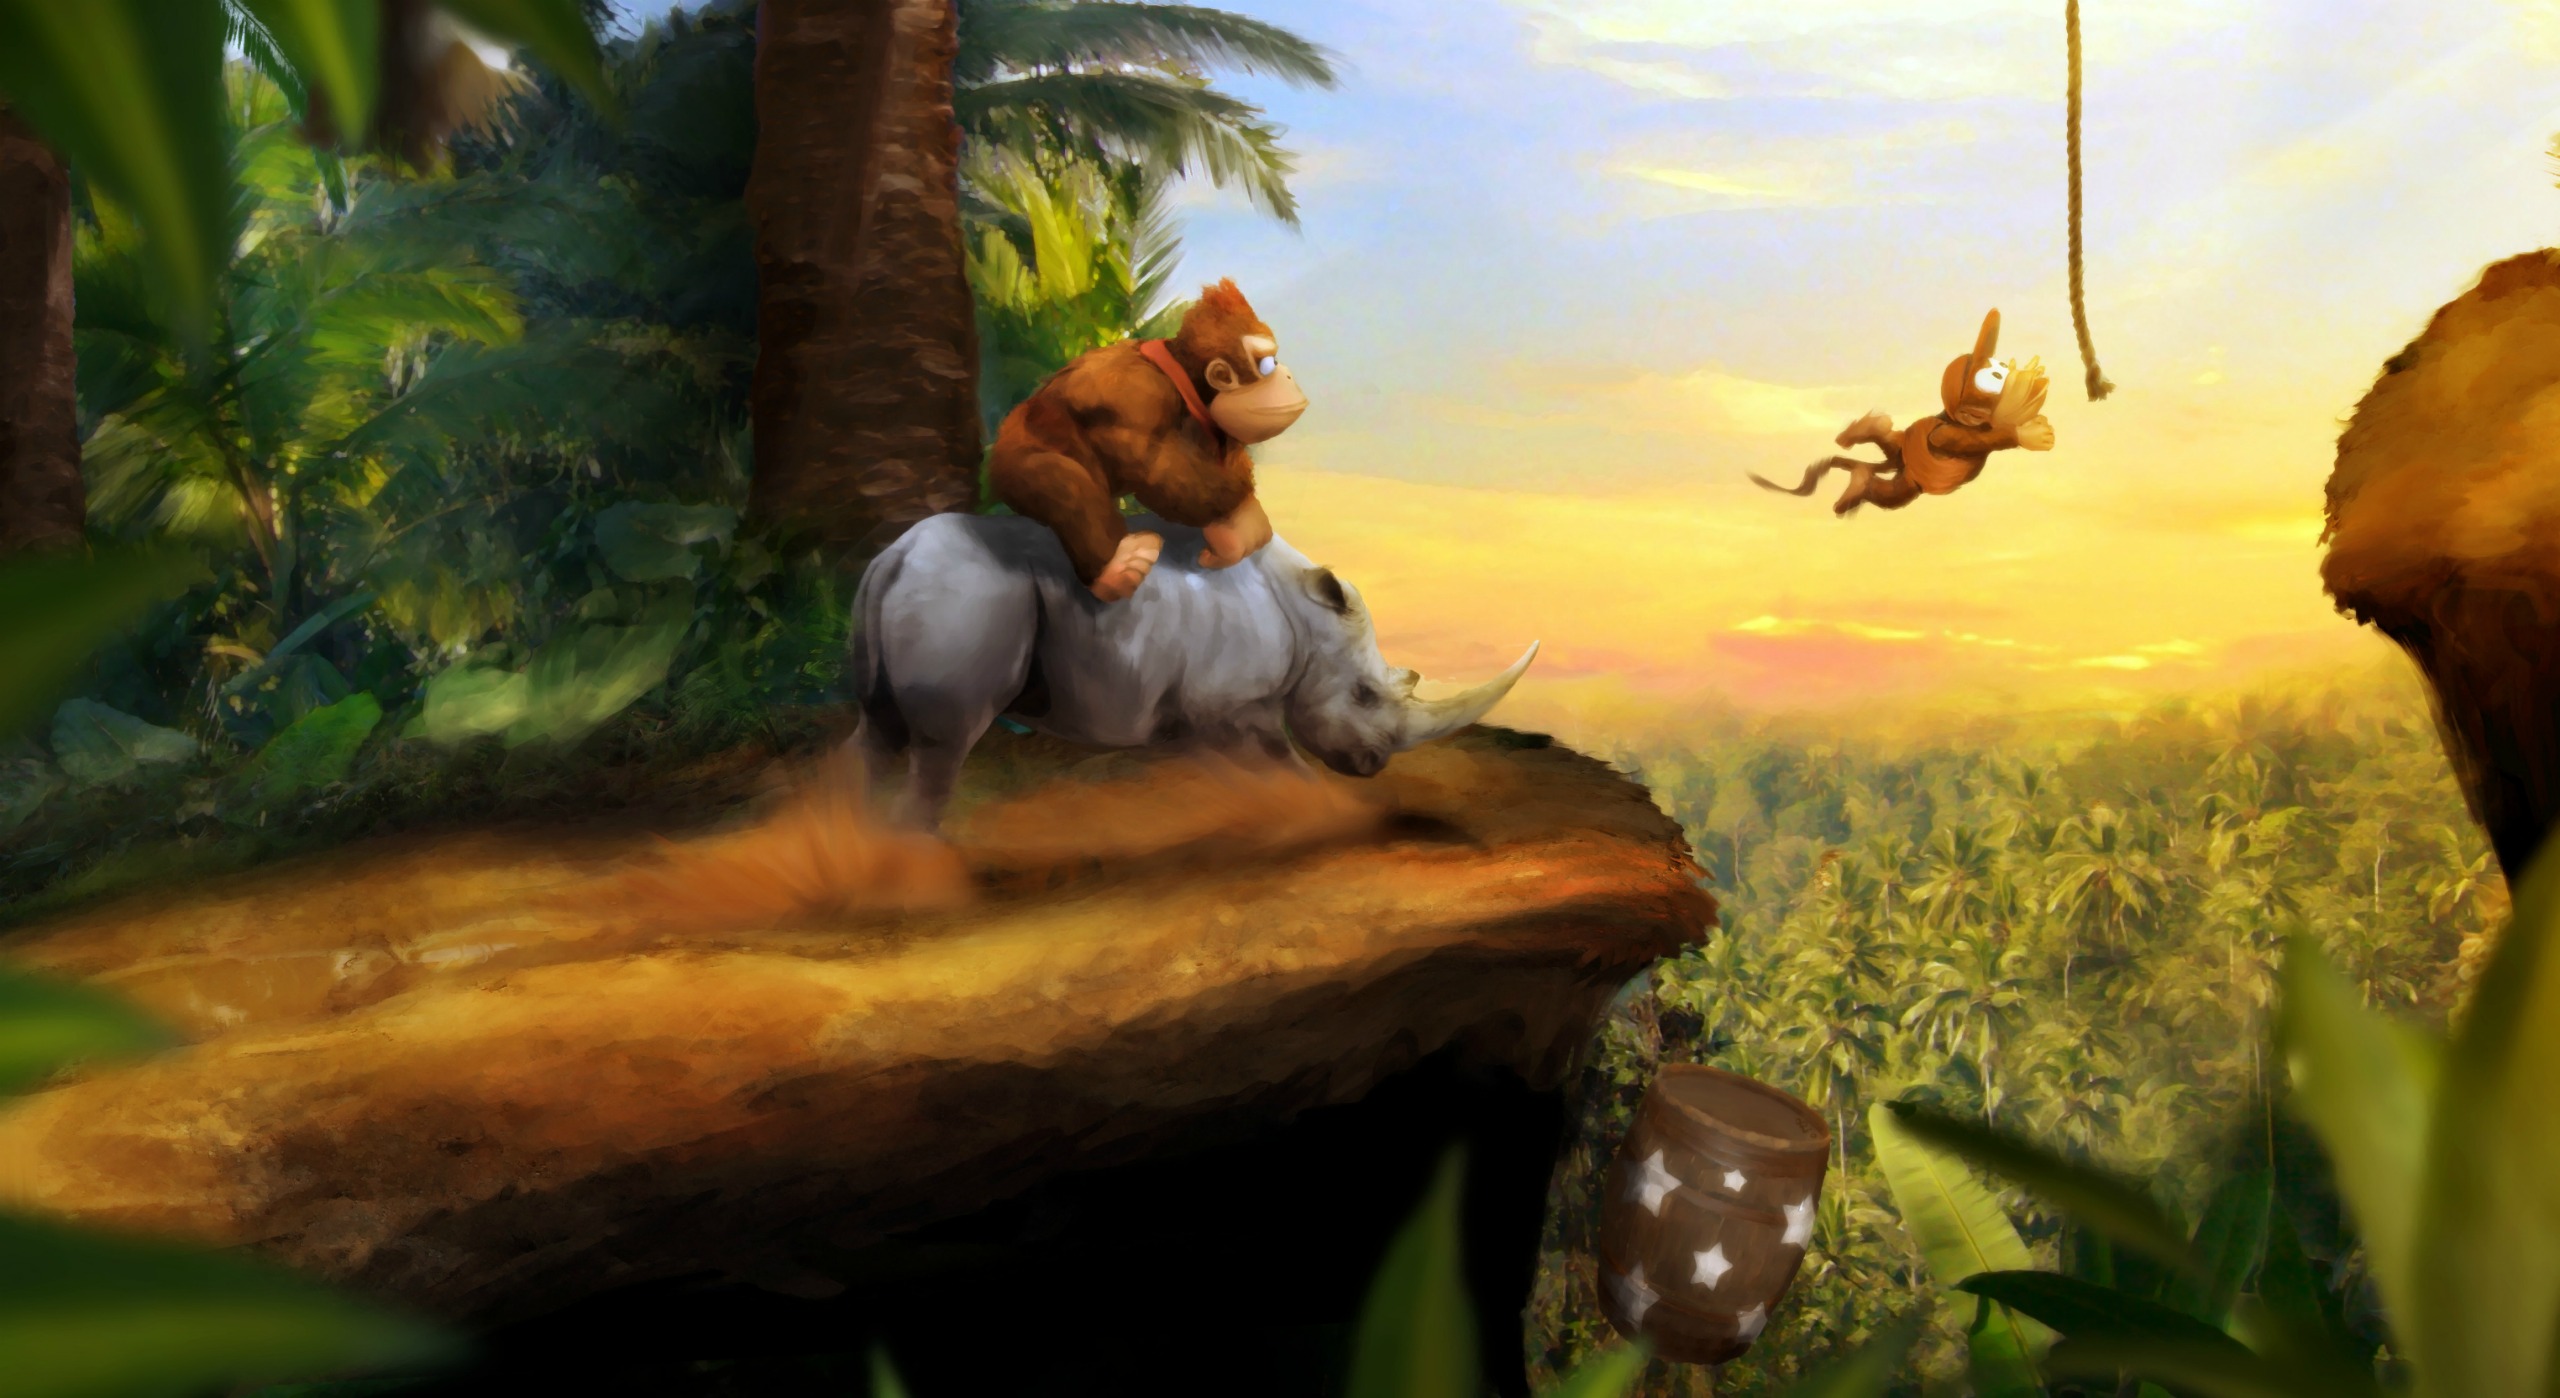 Donkey Kong HD Wallpaper Background Image